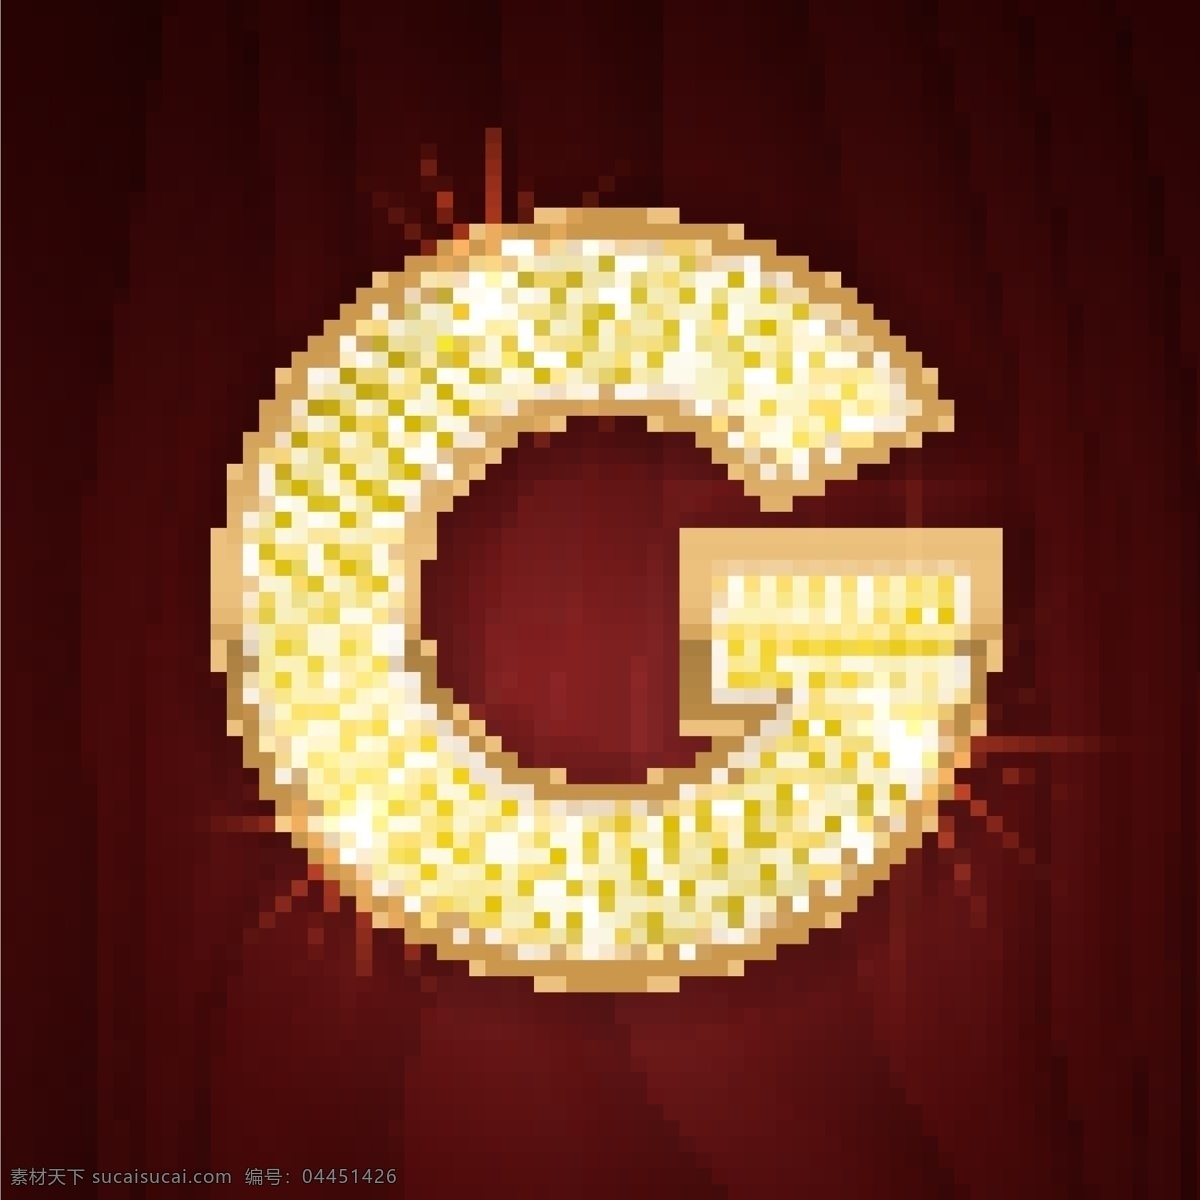 黄色 镶边 钻石 闪耀 英文 字母 g 红色背景 金色 英文字母 闪亮 字母g 字母素材 文化艺术 节日庆祝